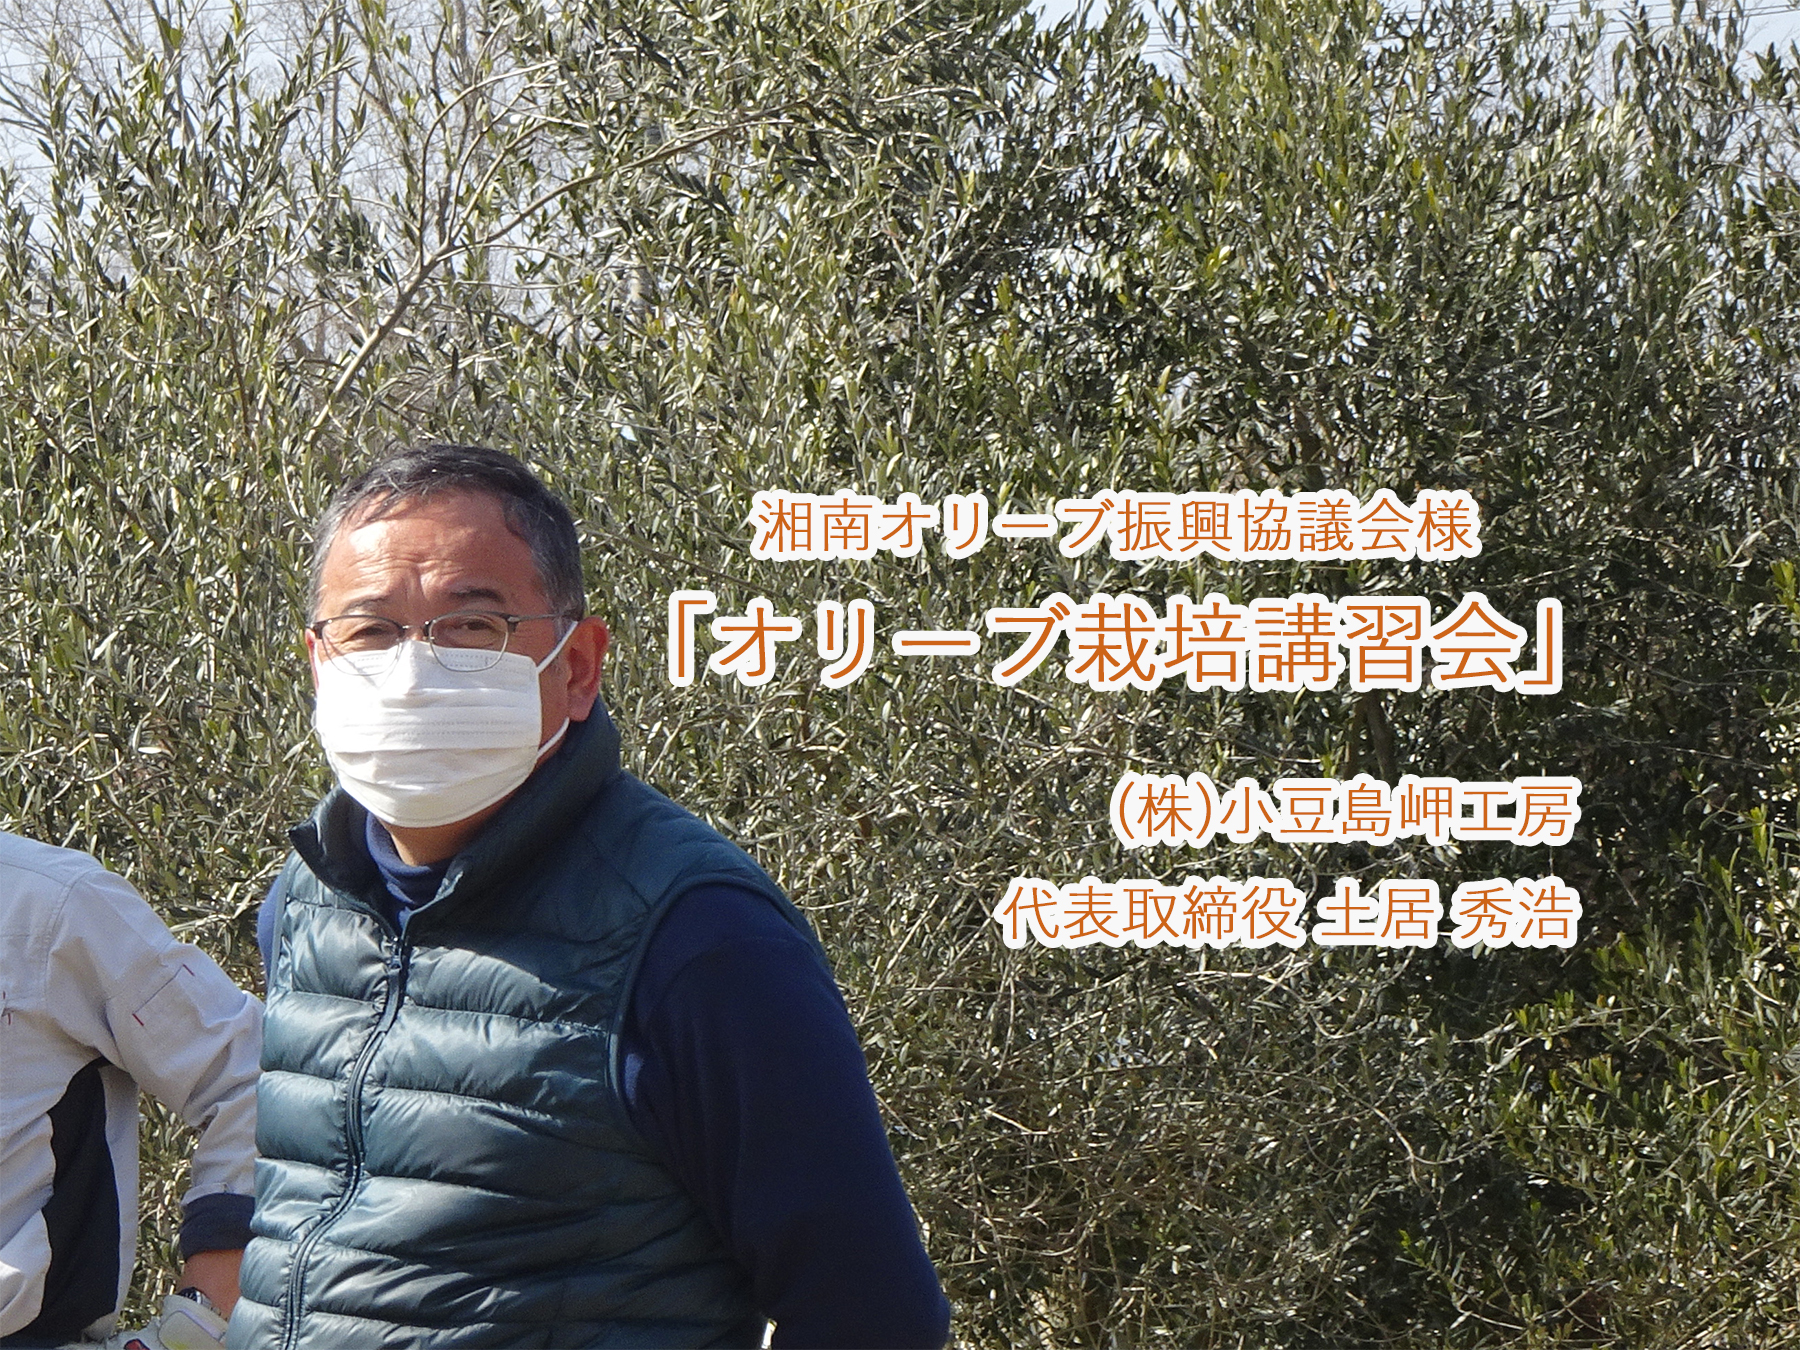 (株)小豆島岬工房・土居さんによる栽培指導講習会が開催されました。